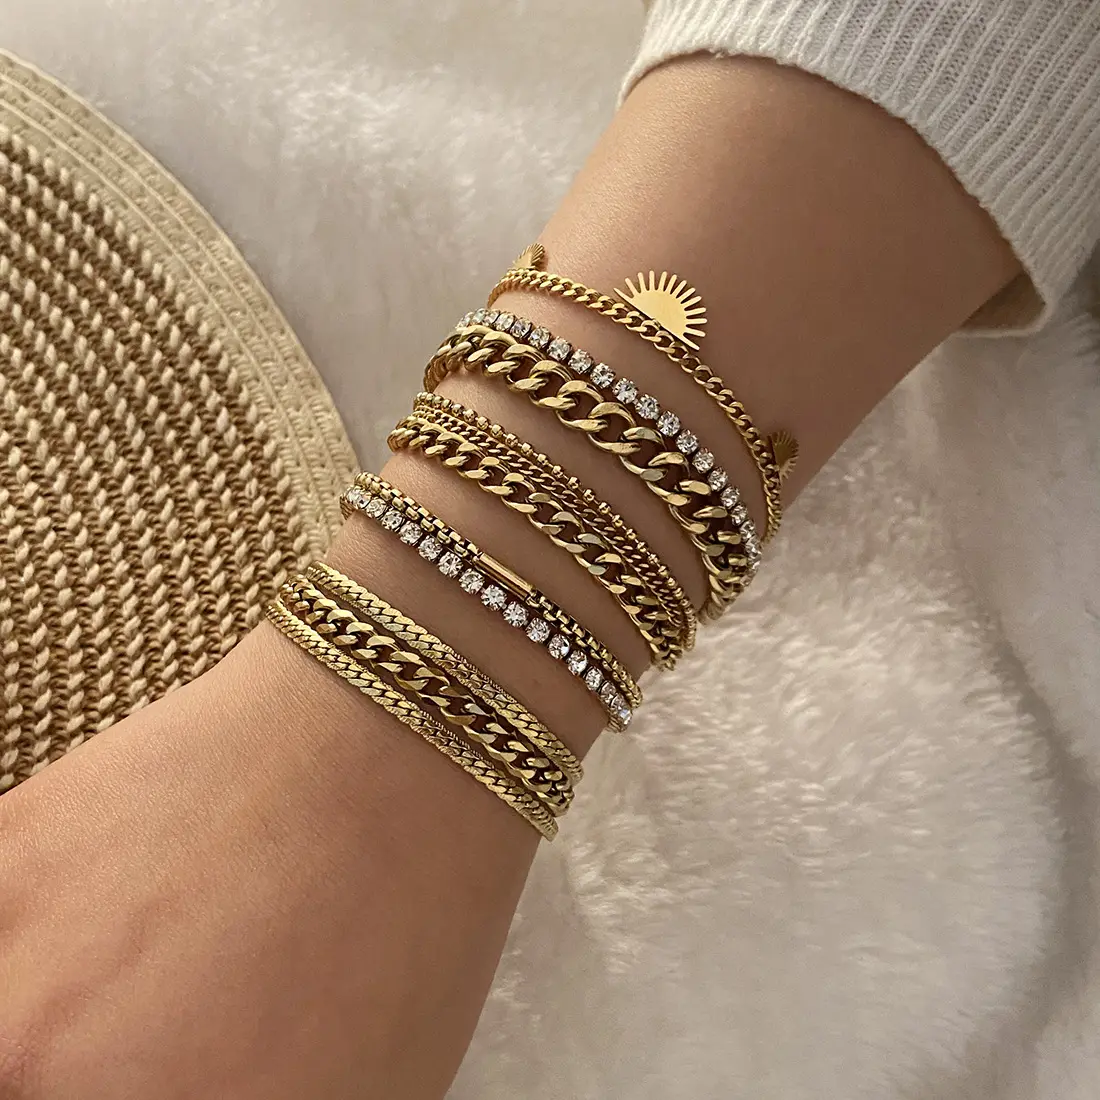 Vendita calda personalità 18k placcato oro braccialetto gioielli in acciaio inox catena impilamento bracciale per le donne